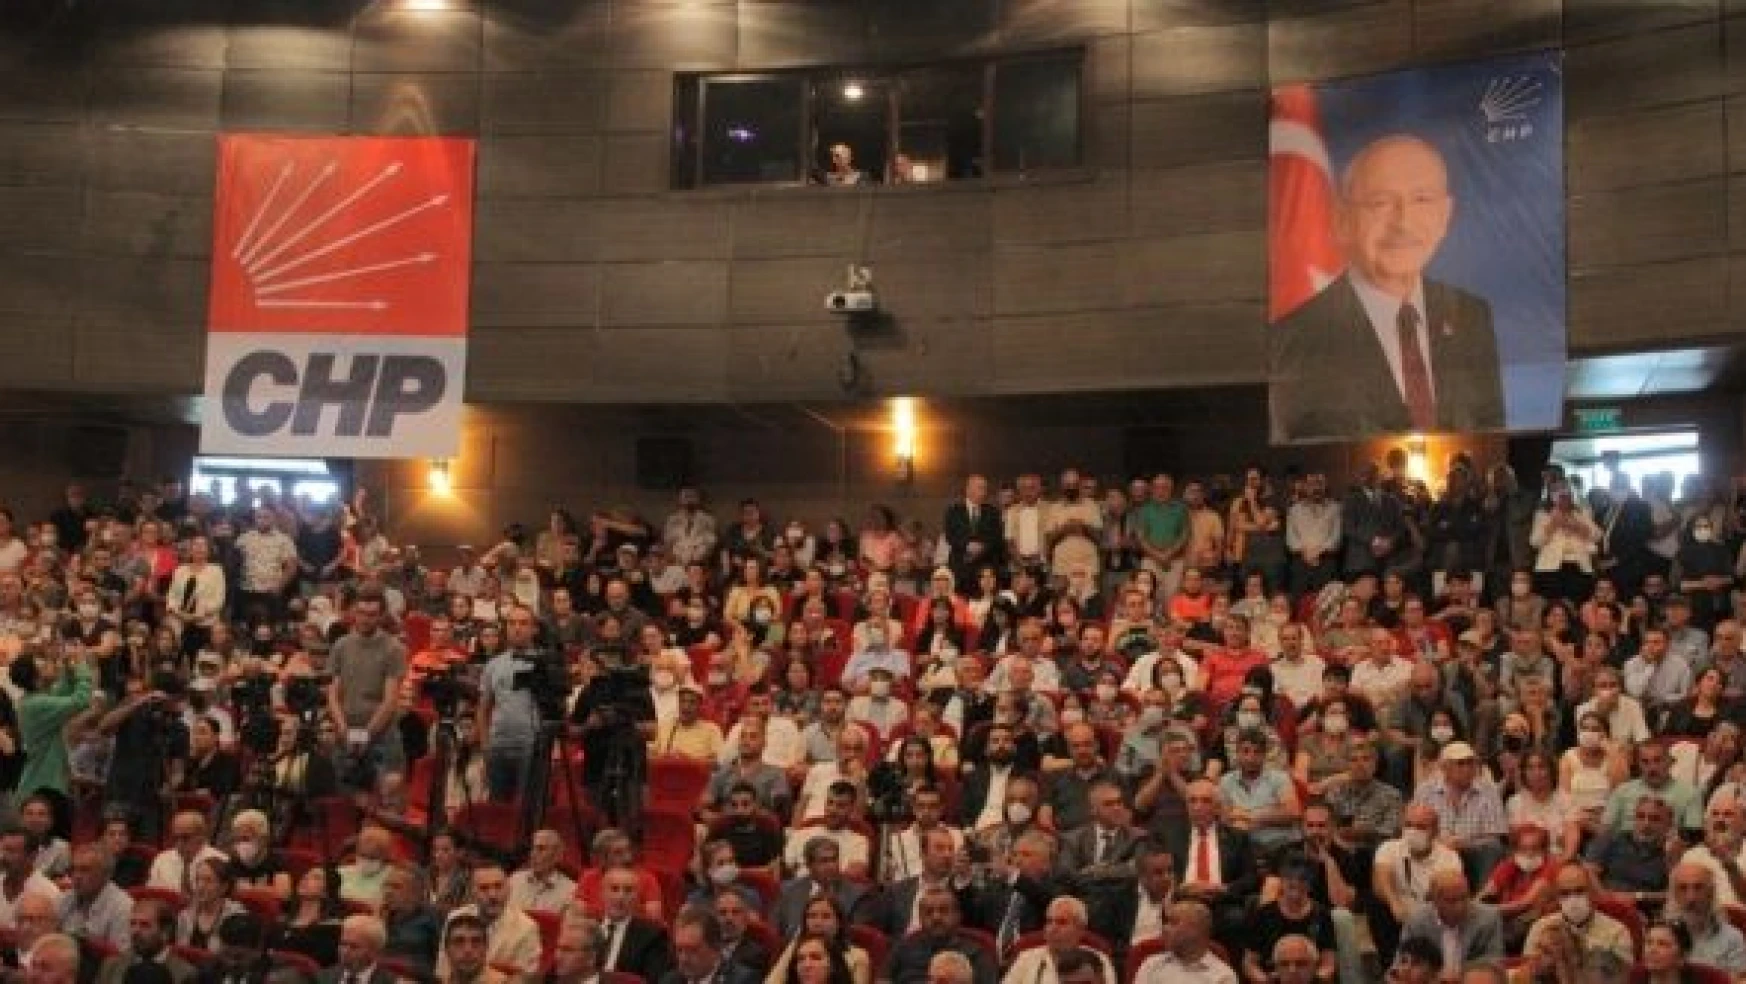 CHP Genel Başkanı Kılıçdaroğlu:  " Önemli olan bizim için Elazığlılardır"